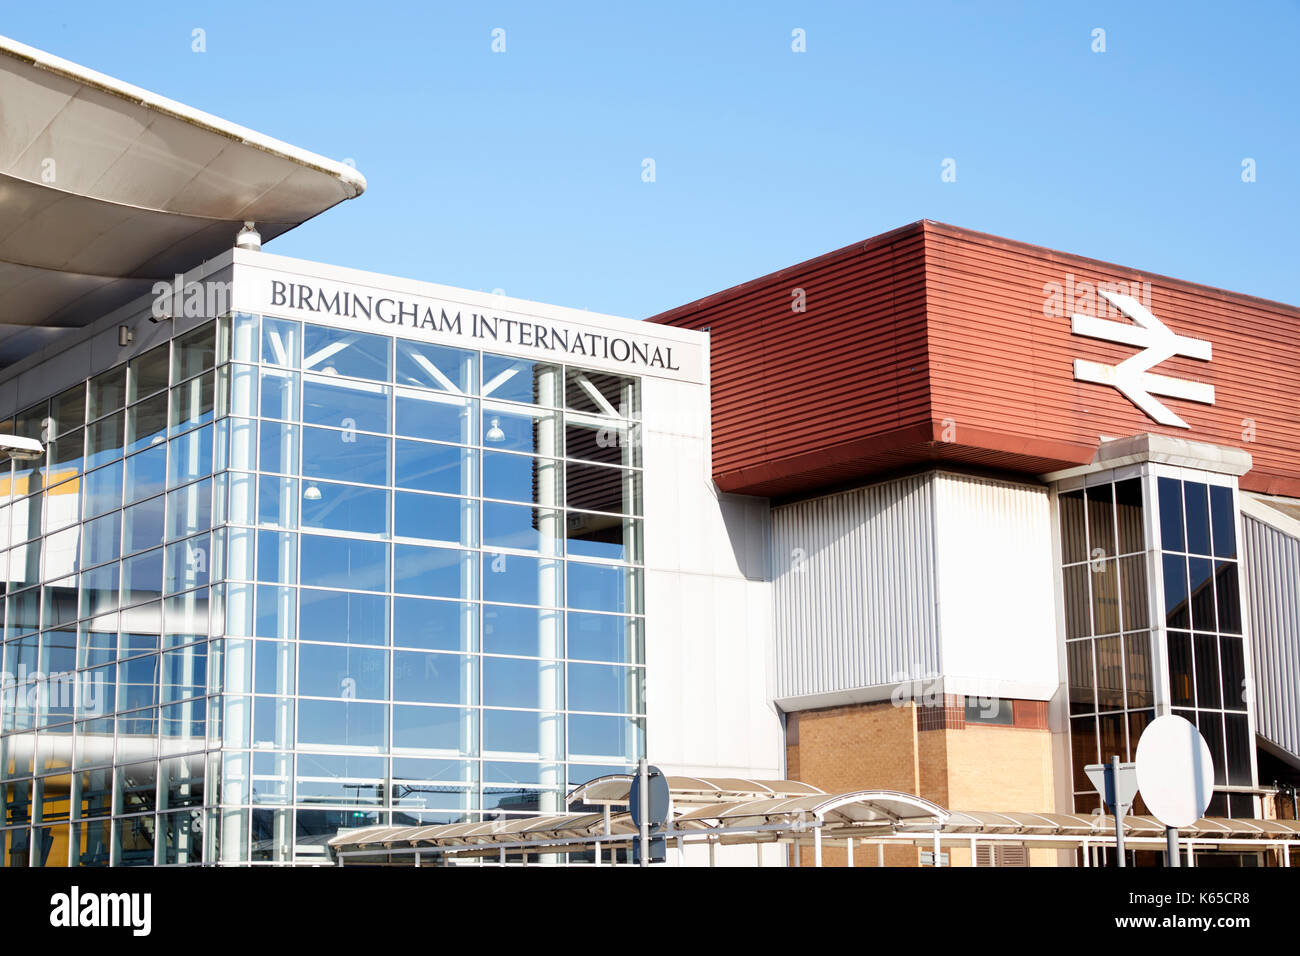 Birmingham, Reino Unido - 6 de noviembre de 2016: el exterior de la estación internacional de tren de Birmingham en el aeropuerto Foto de stock